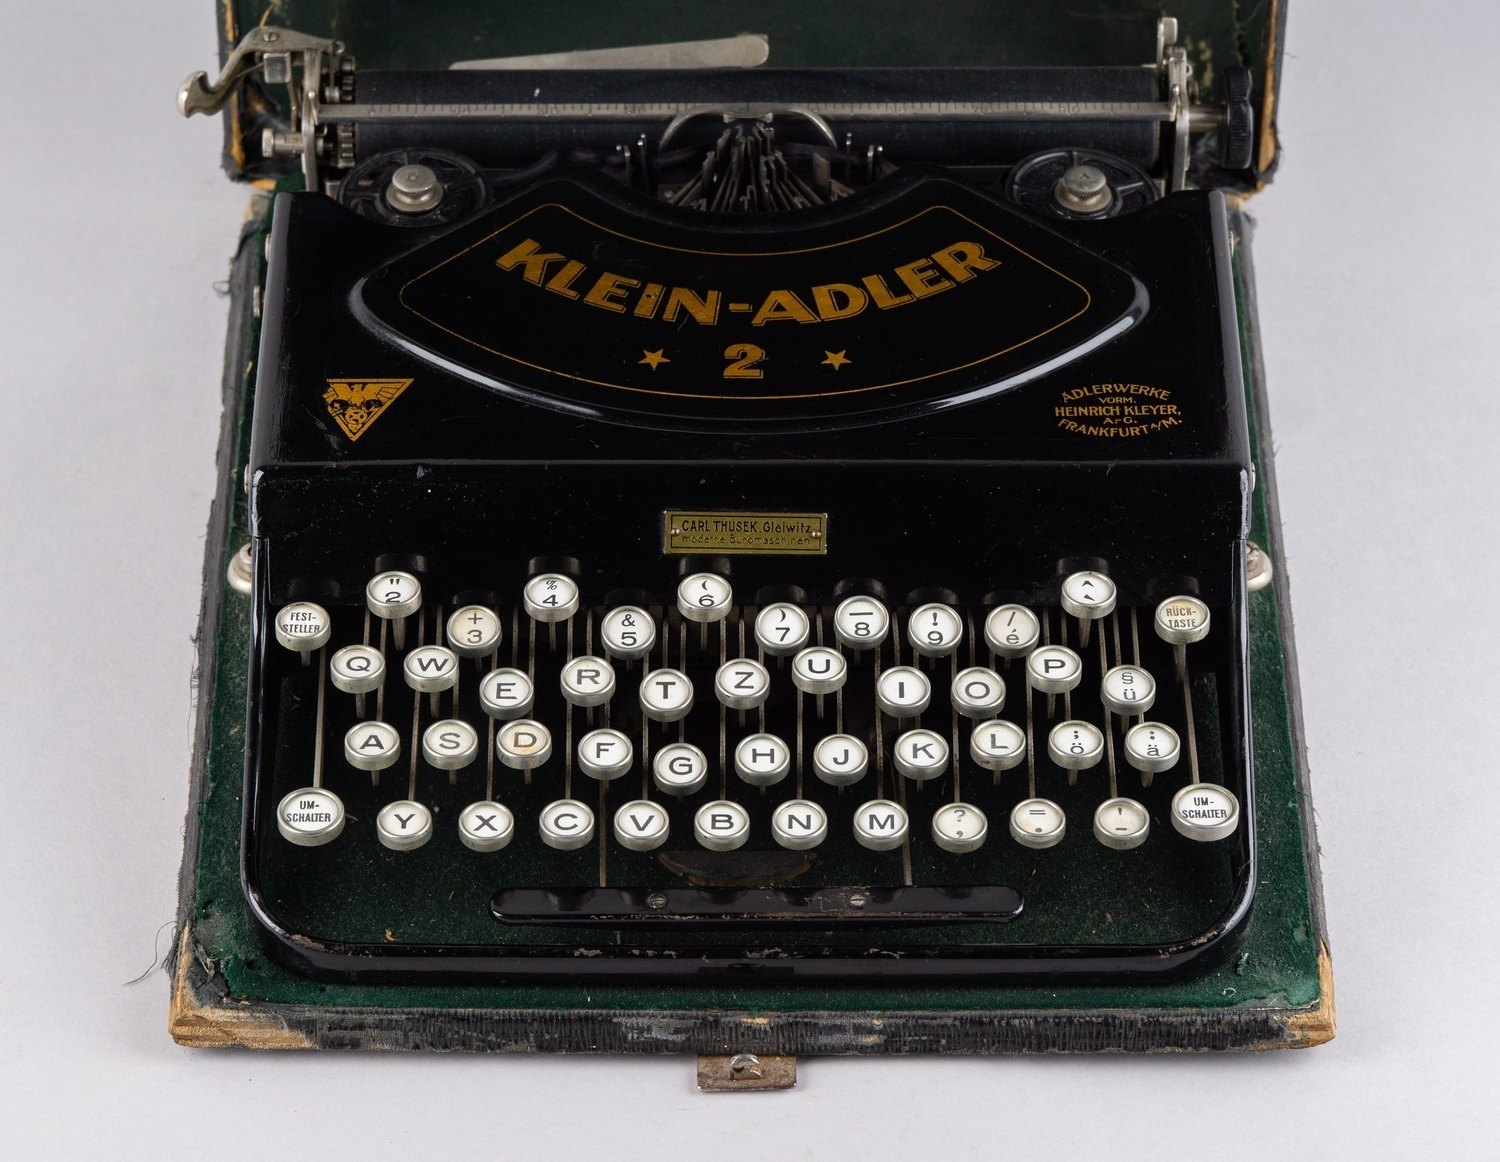 Машинка печатная портативная «Klein-Adler 2», Германия, 1930-е годы.<br>